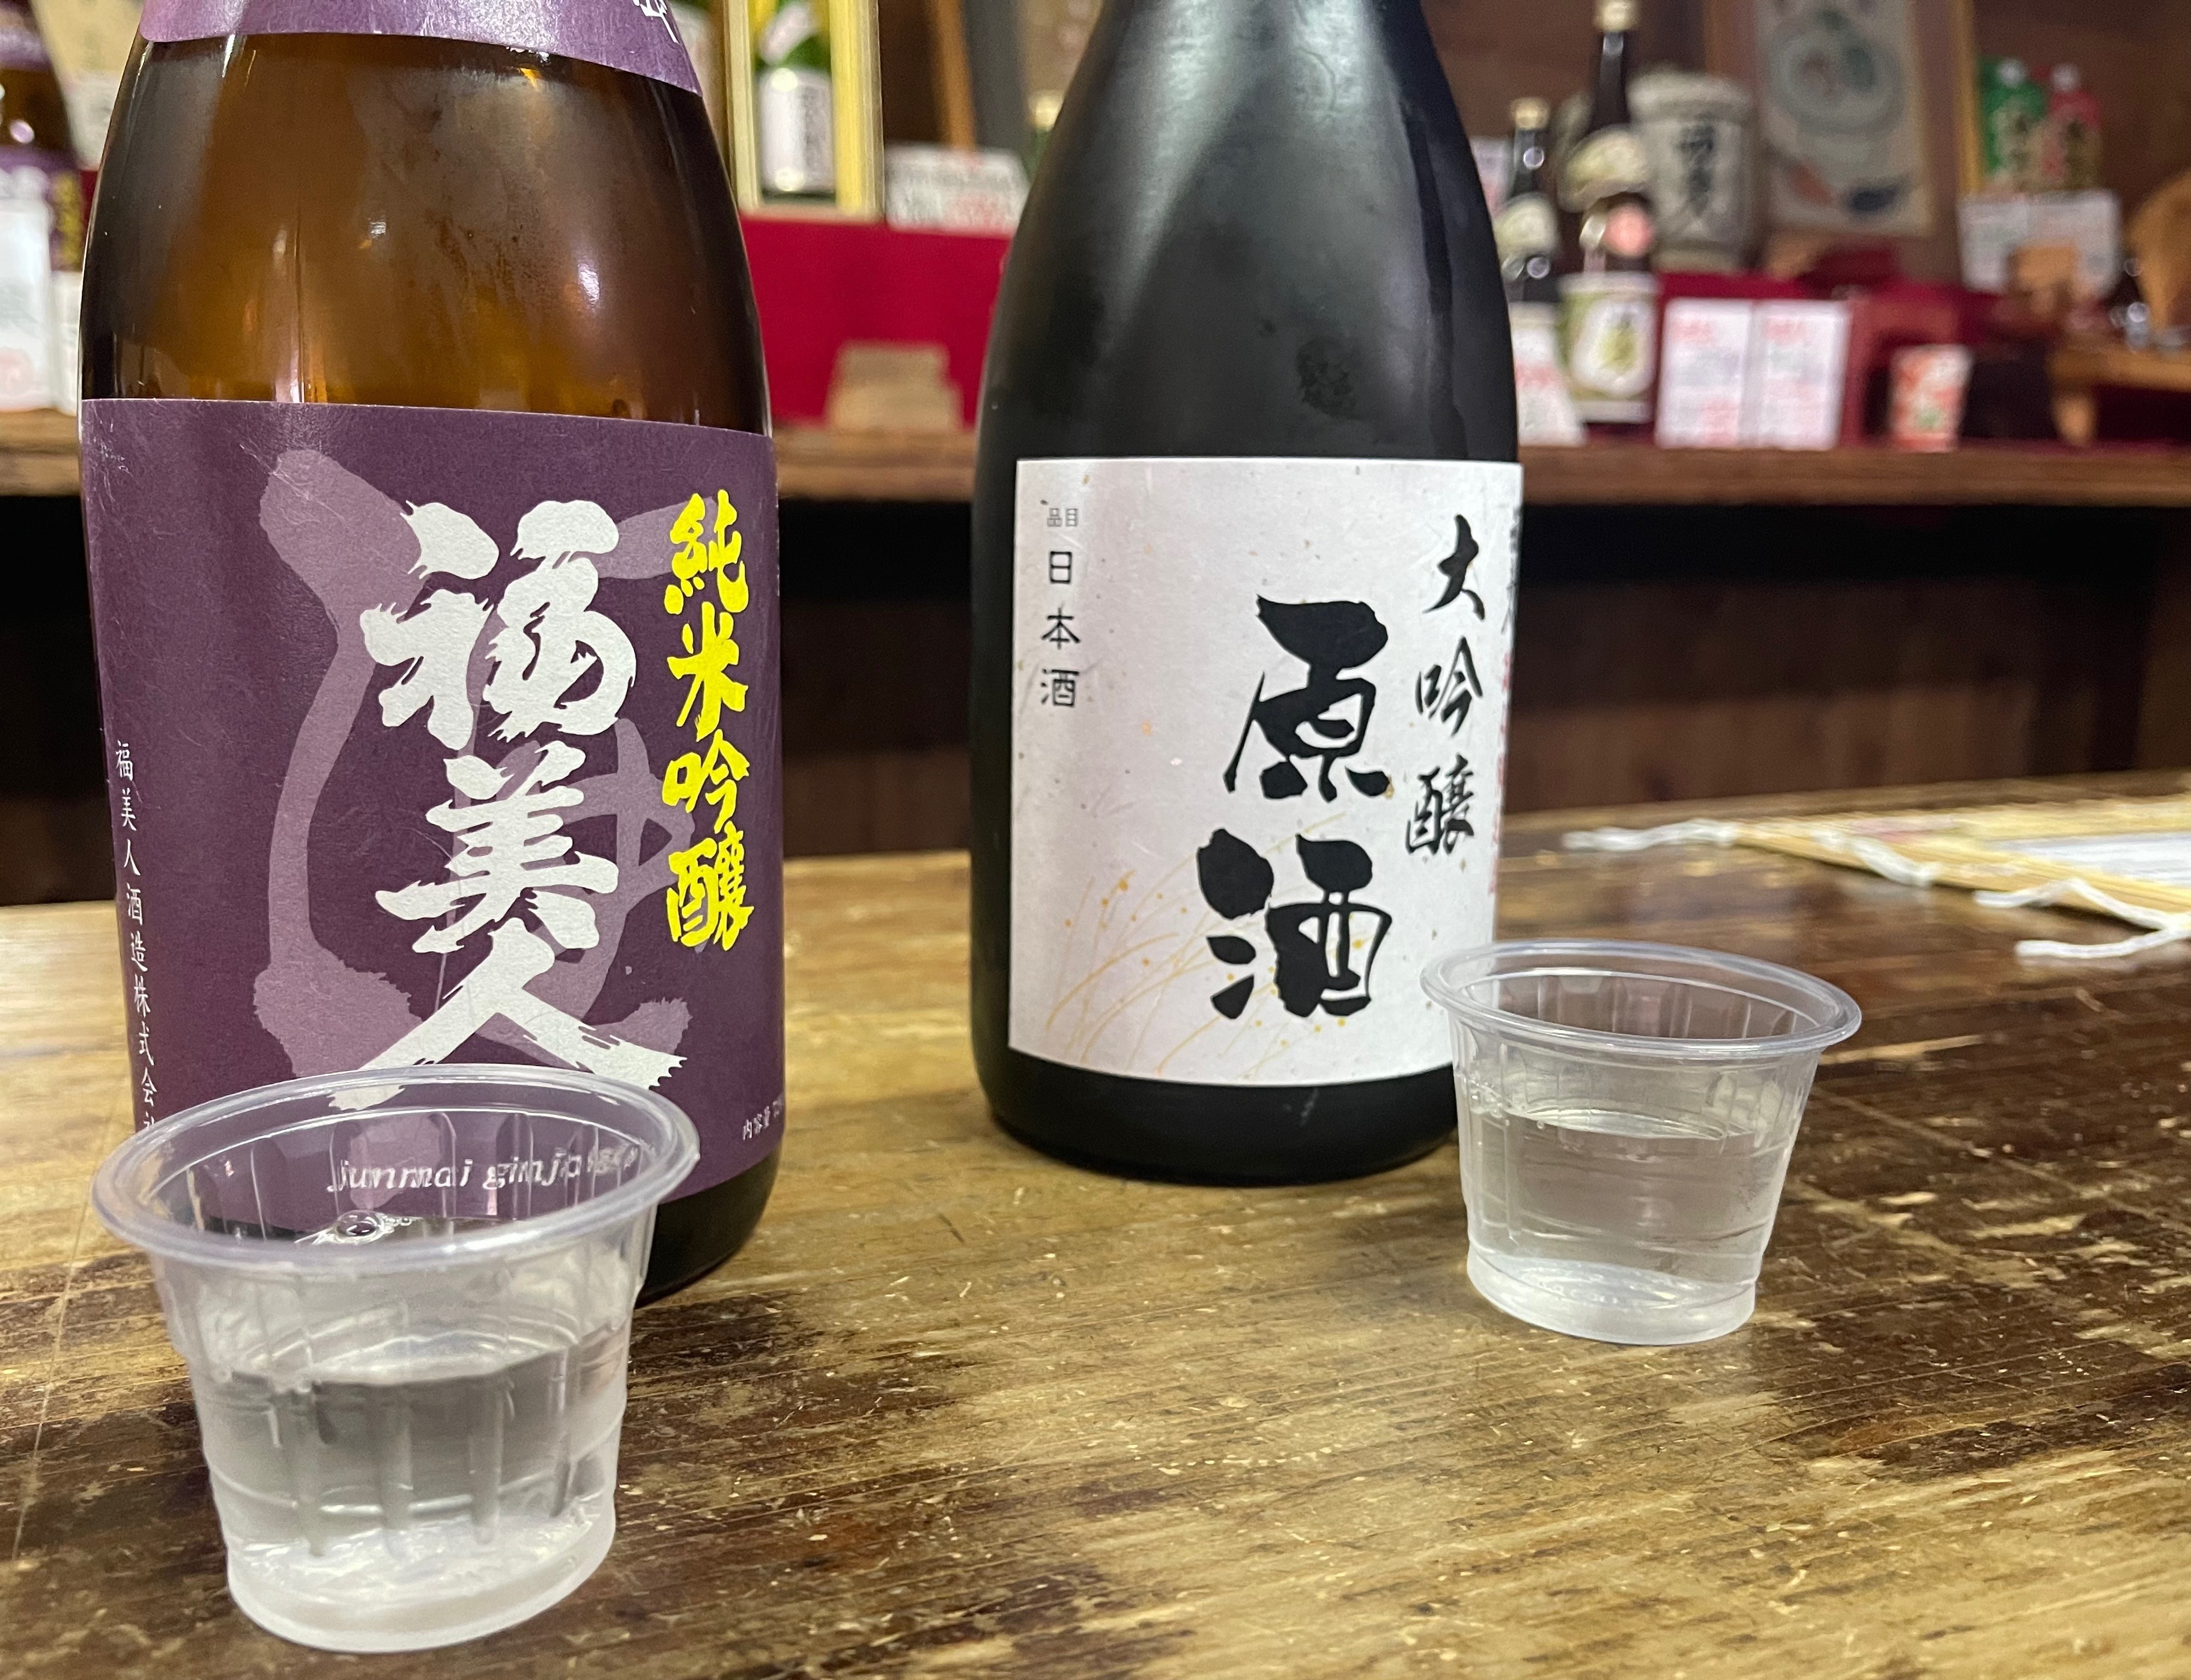 様々な種類の日本酒を試飲できます